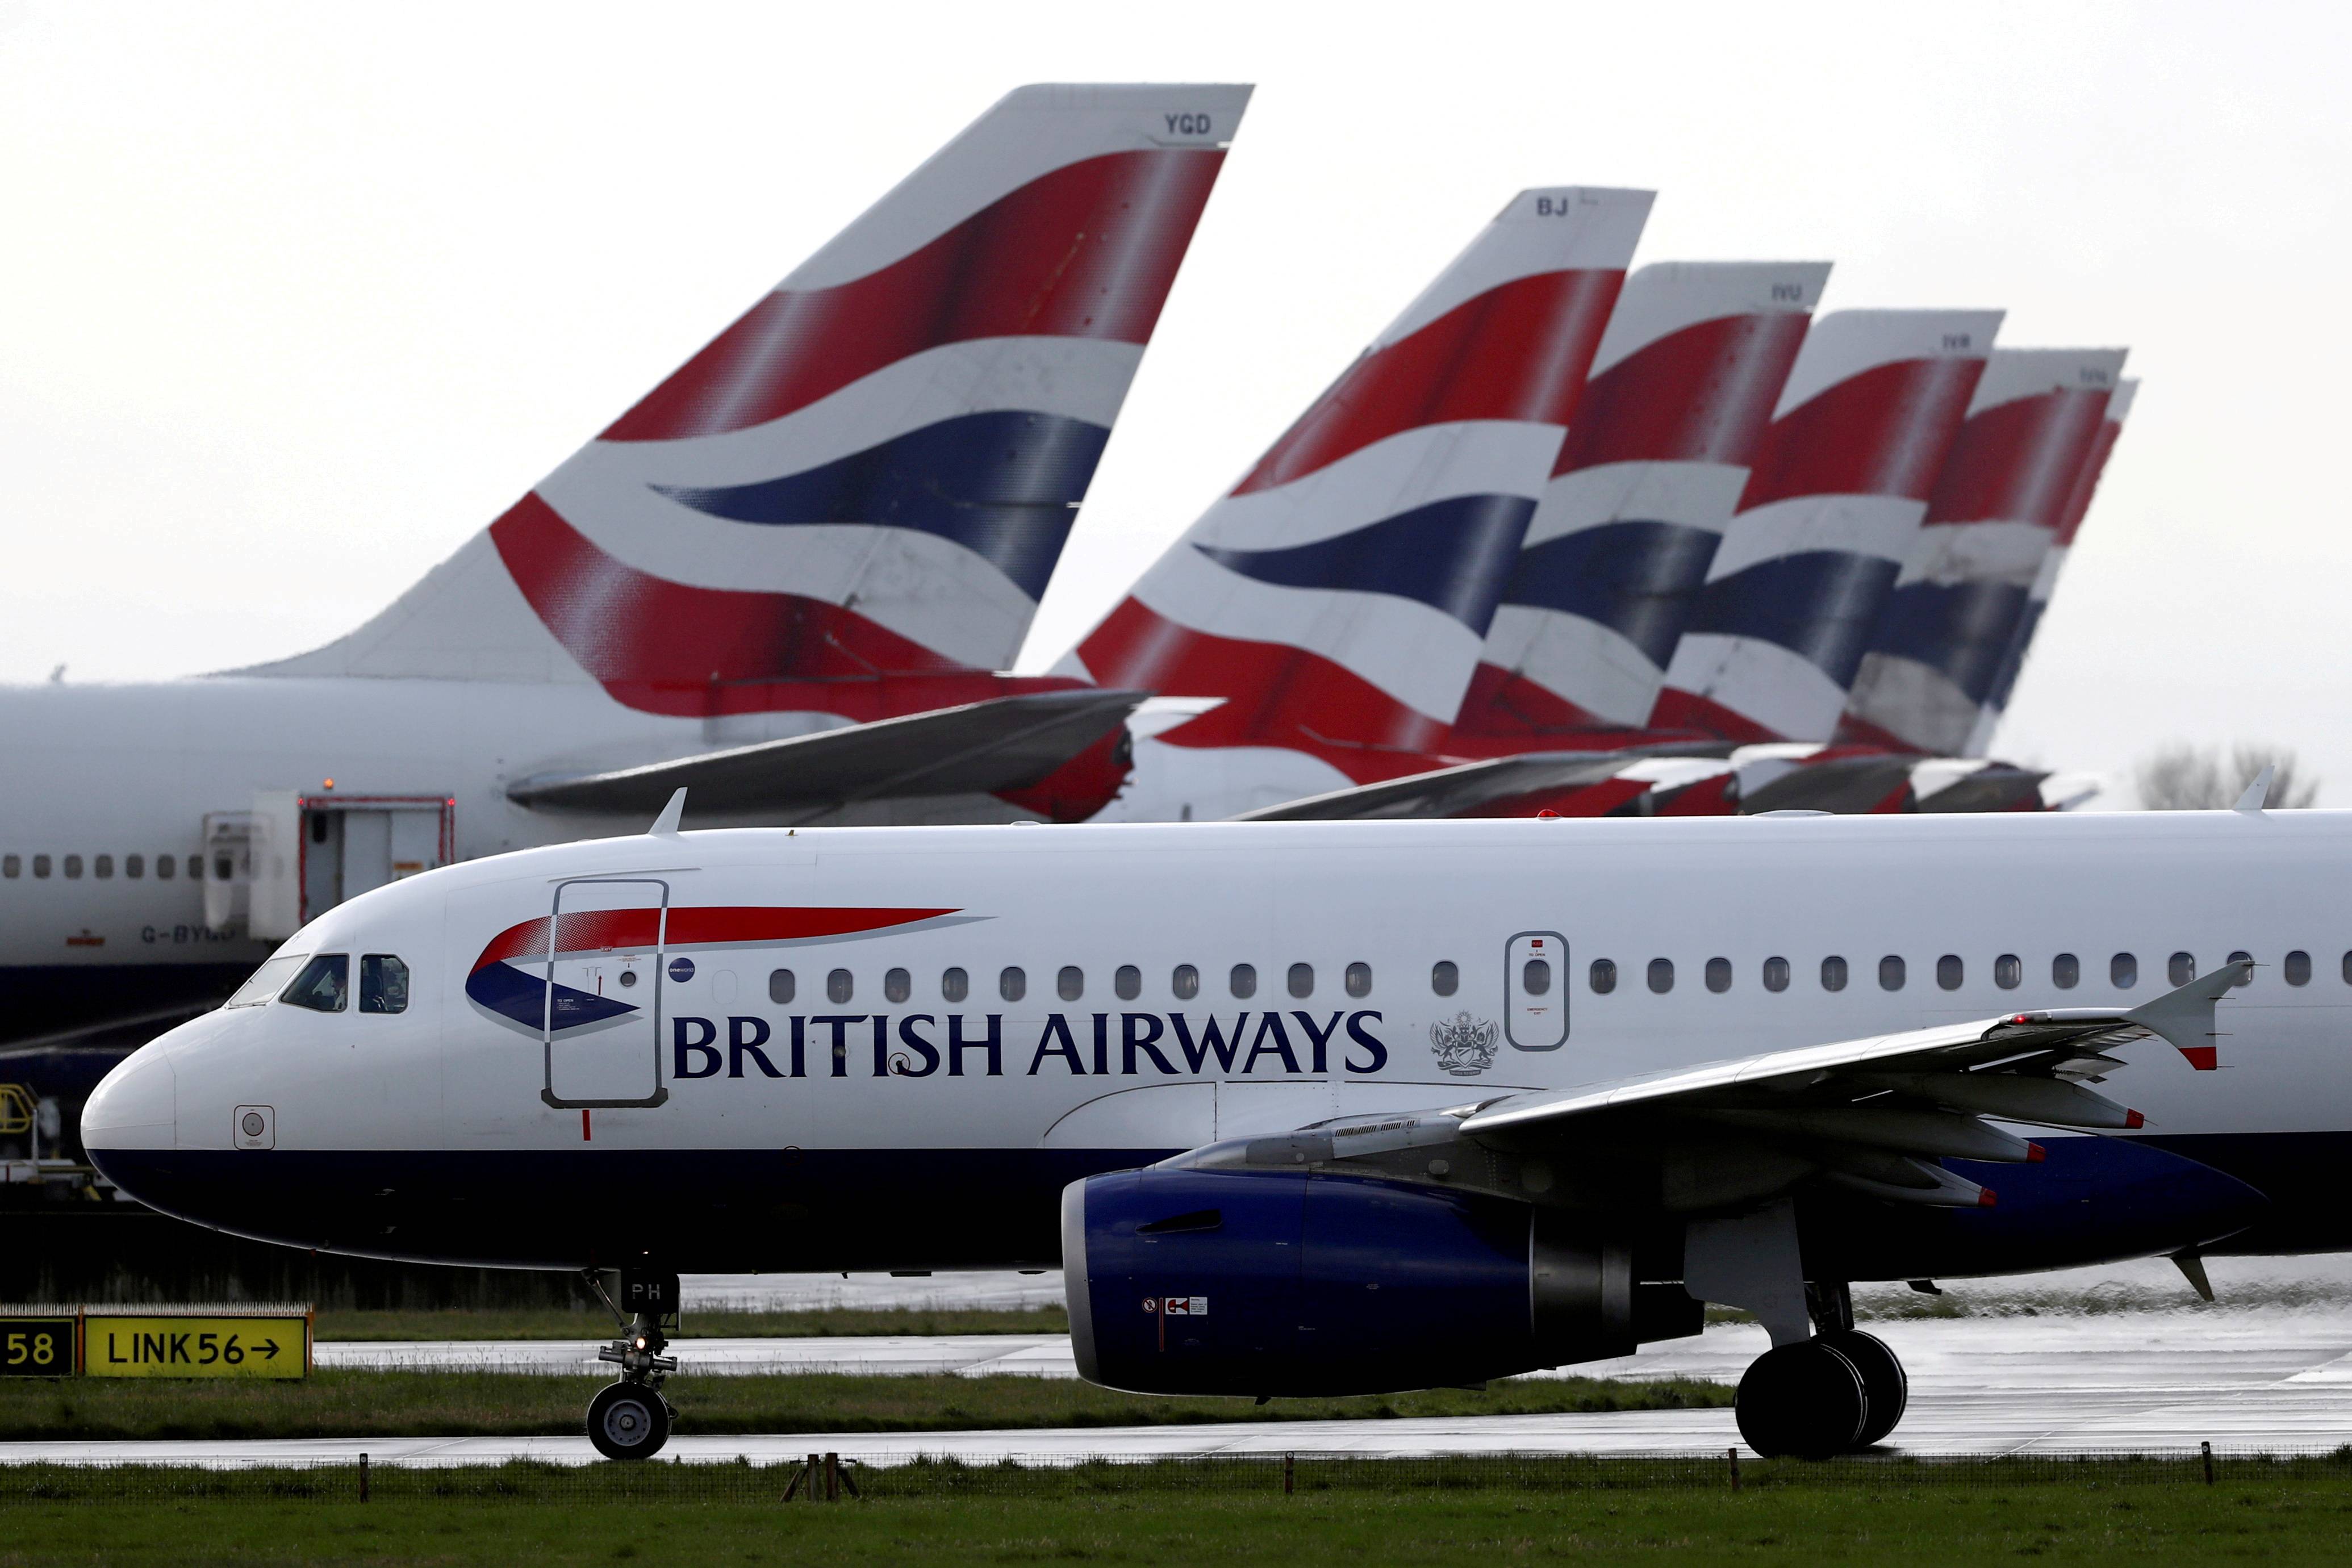 Одна из крупнейших авиакомпаний в европе — британский национальный авиаперевозчик british airways